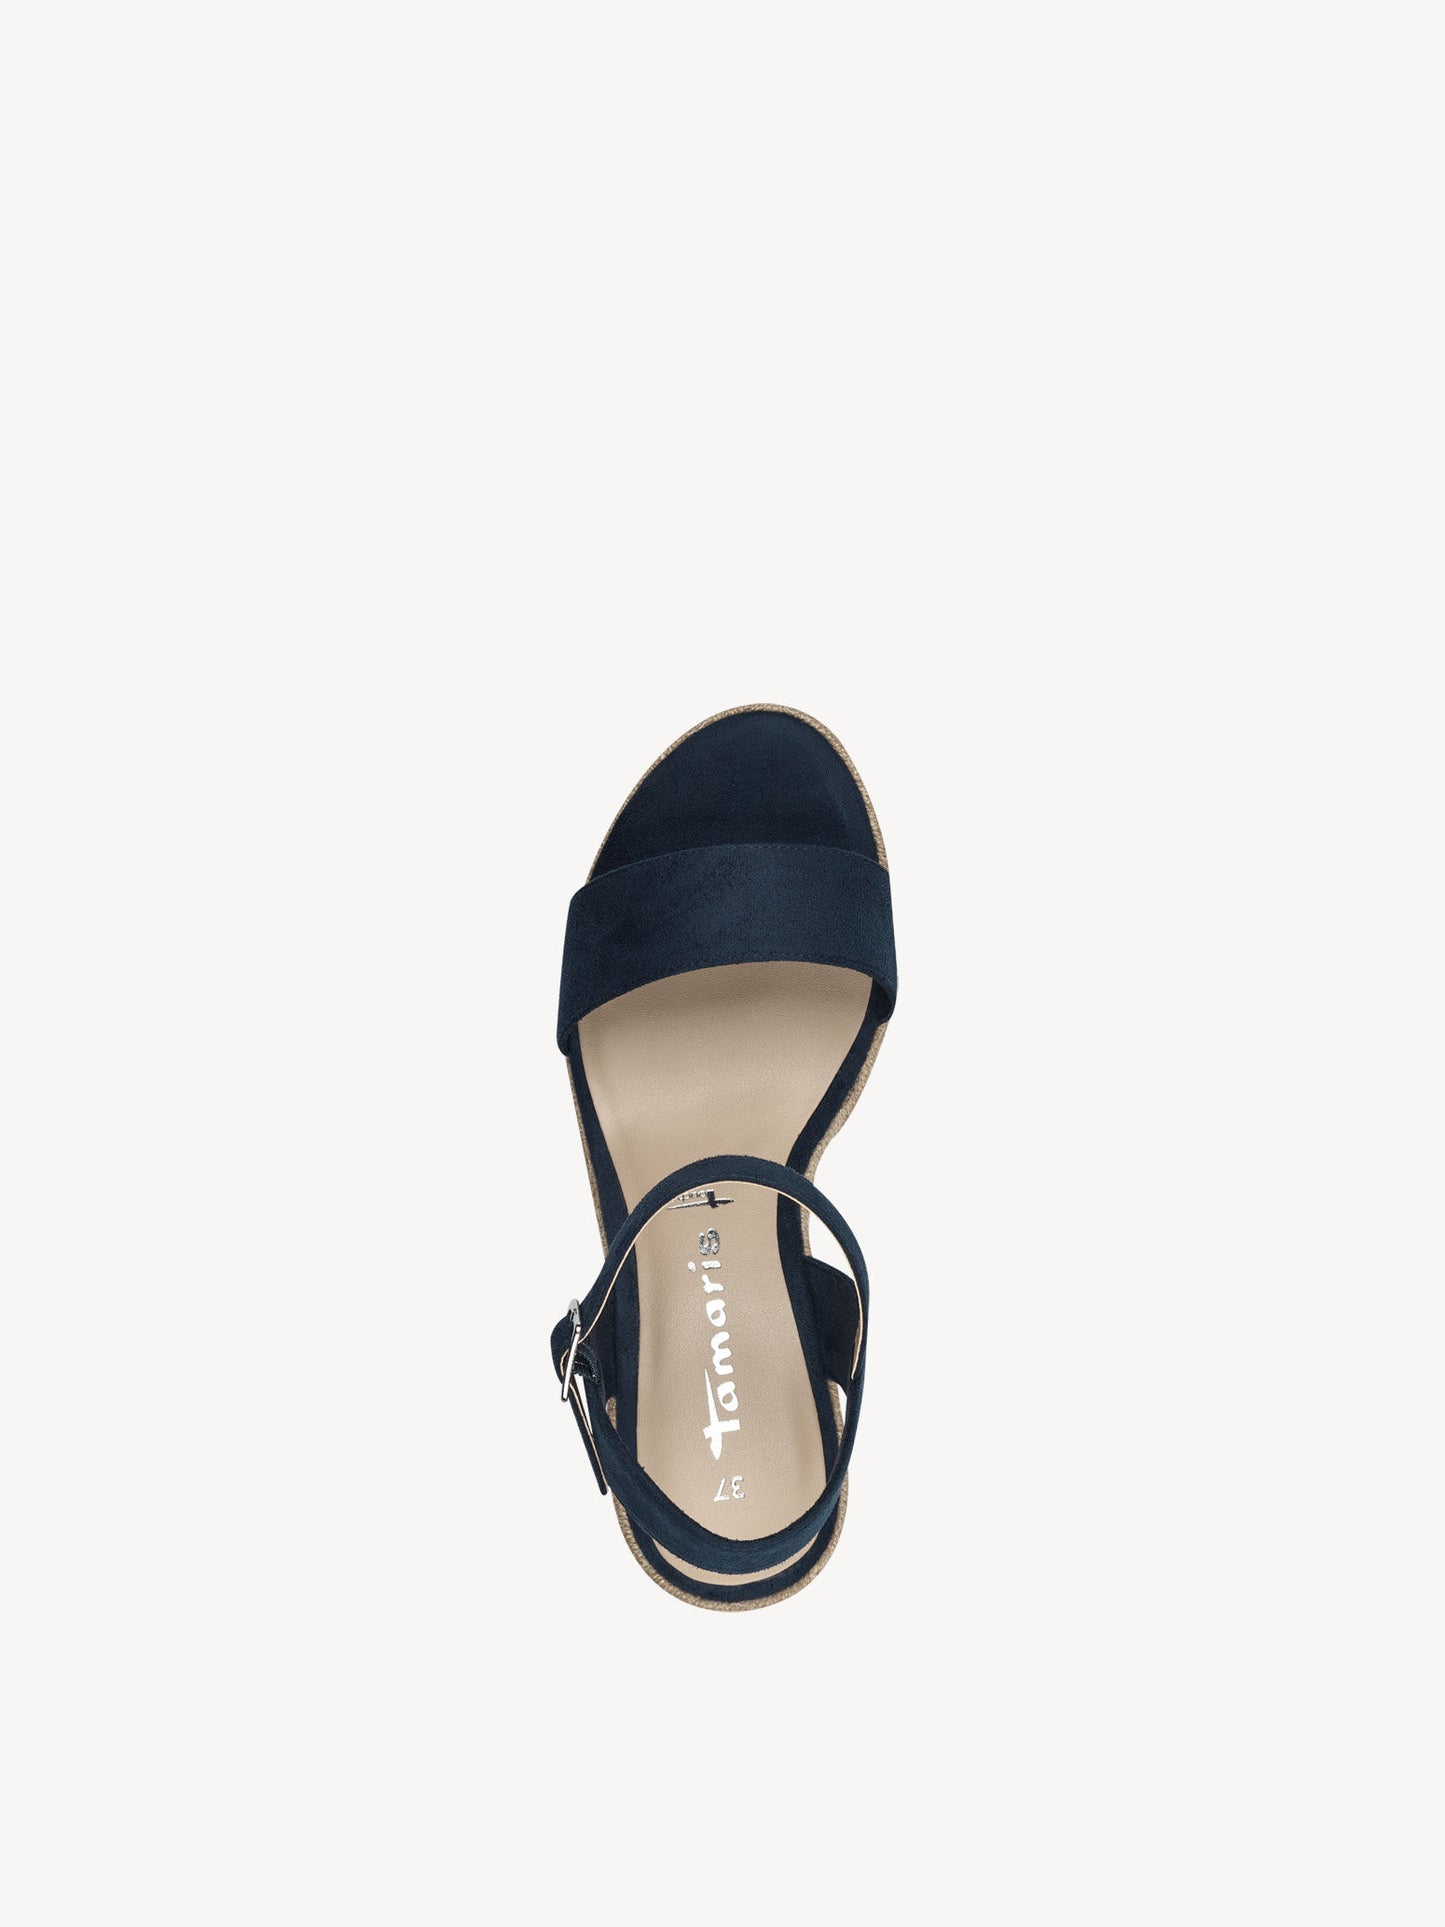 Tamaris Women's 1-28300-42 Wedge Heel Sandals Navy Blue